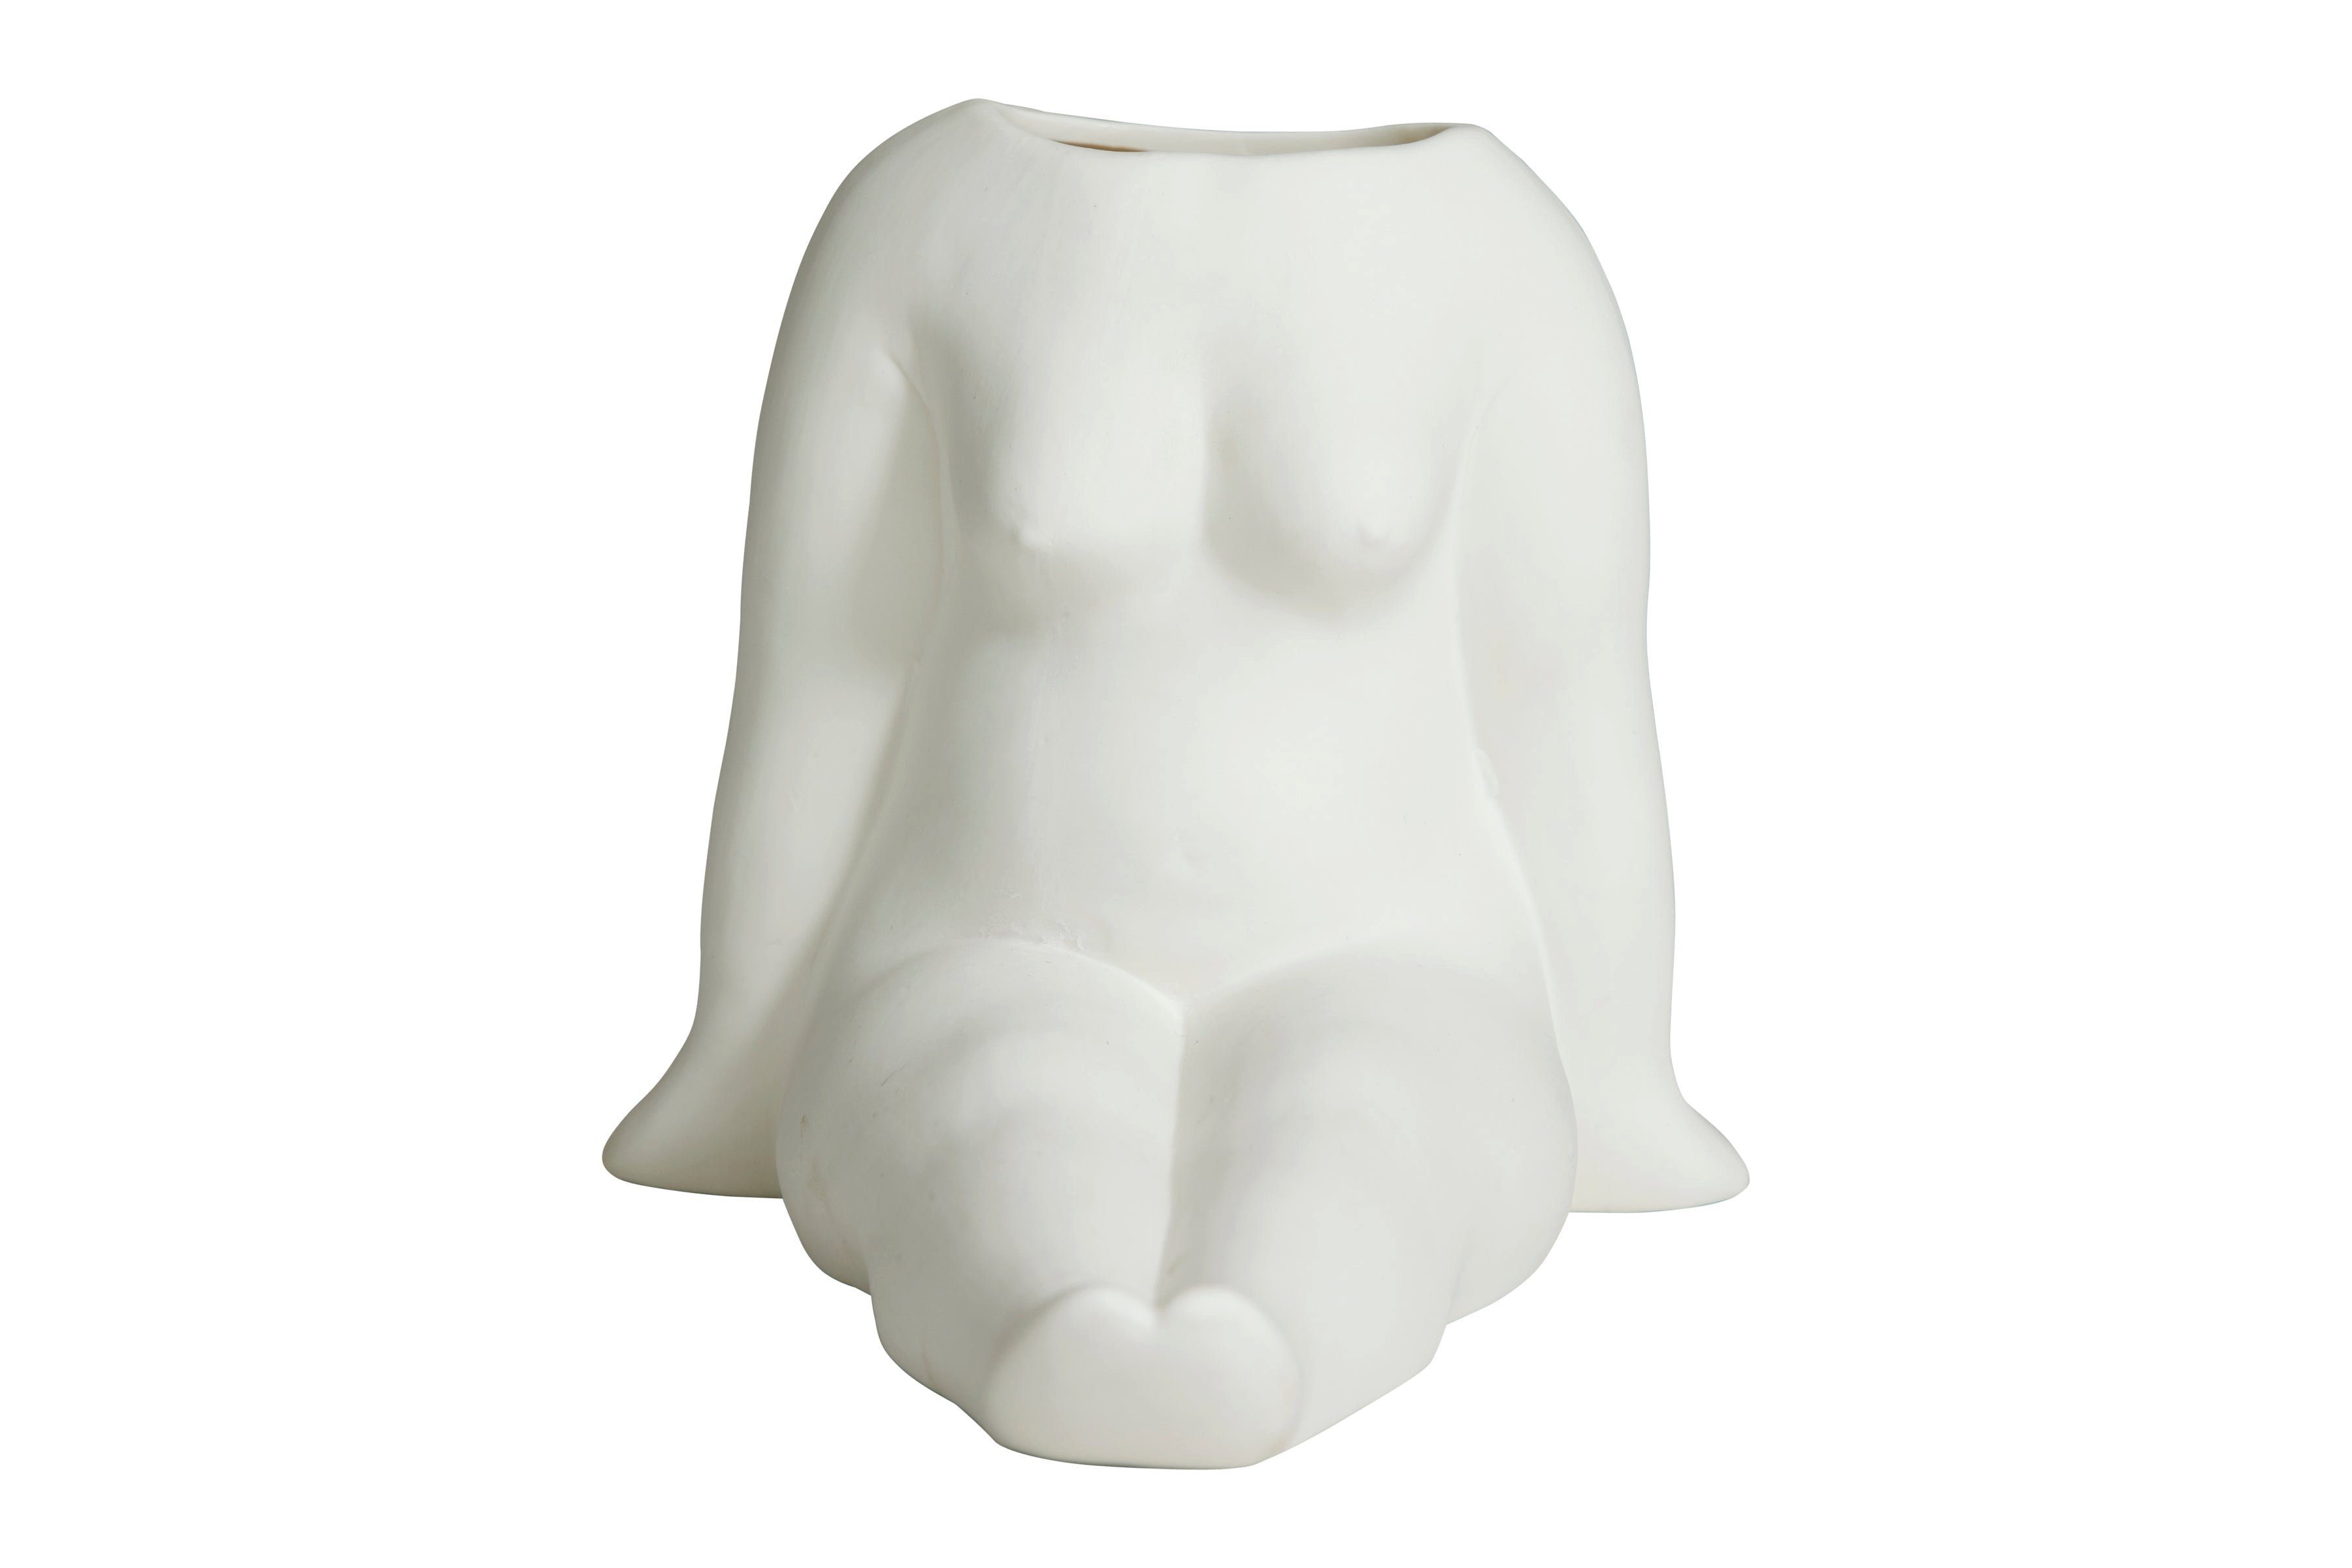 NORDAL Dekovase AVAJI sitzender weiblicher Torso, 16x14cm, aus Keramik